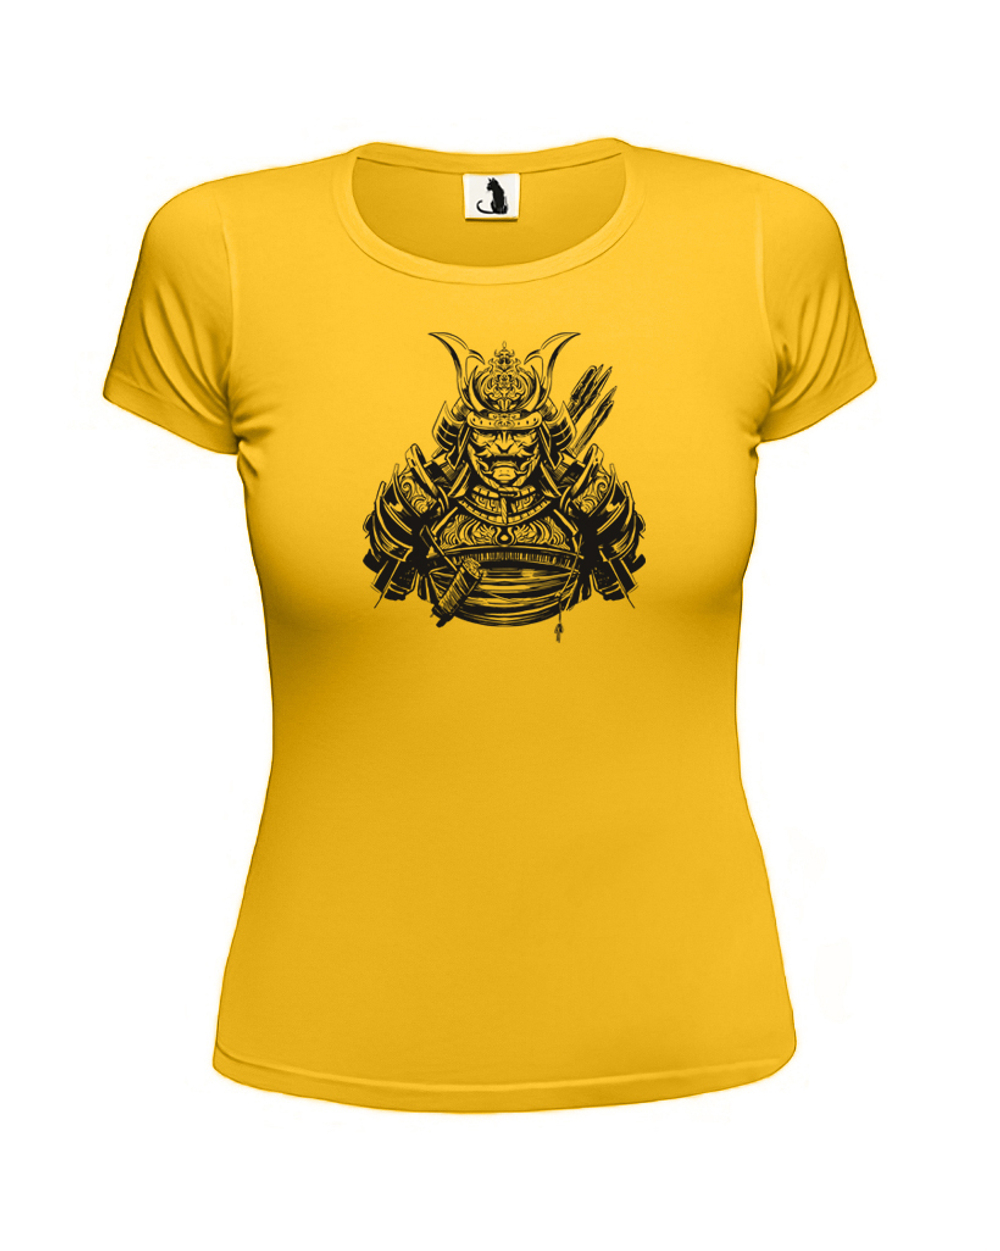 Футболка с воинствующим самураем женская желтая с черным рисунком